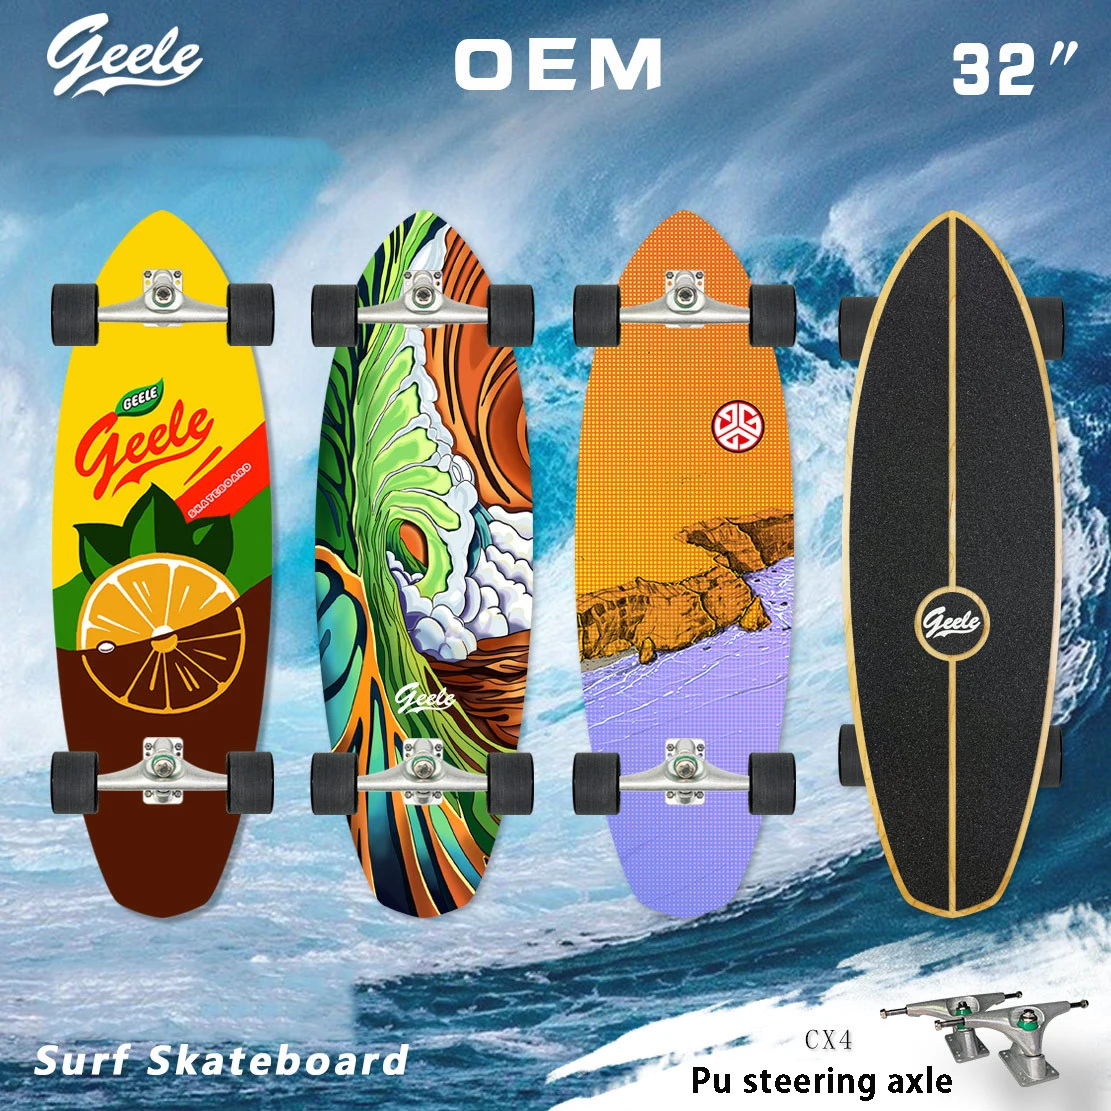 Fashion Skateboard Land Surfboard CX4 Ski Training Board Simulated Surfboard 32 Inch Extended Surfboard